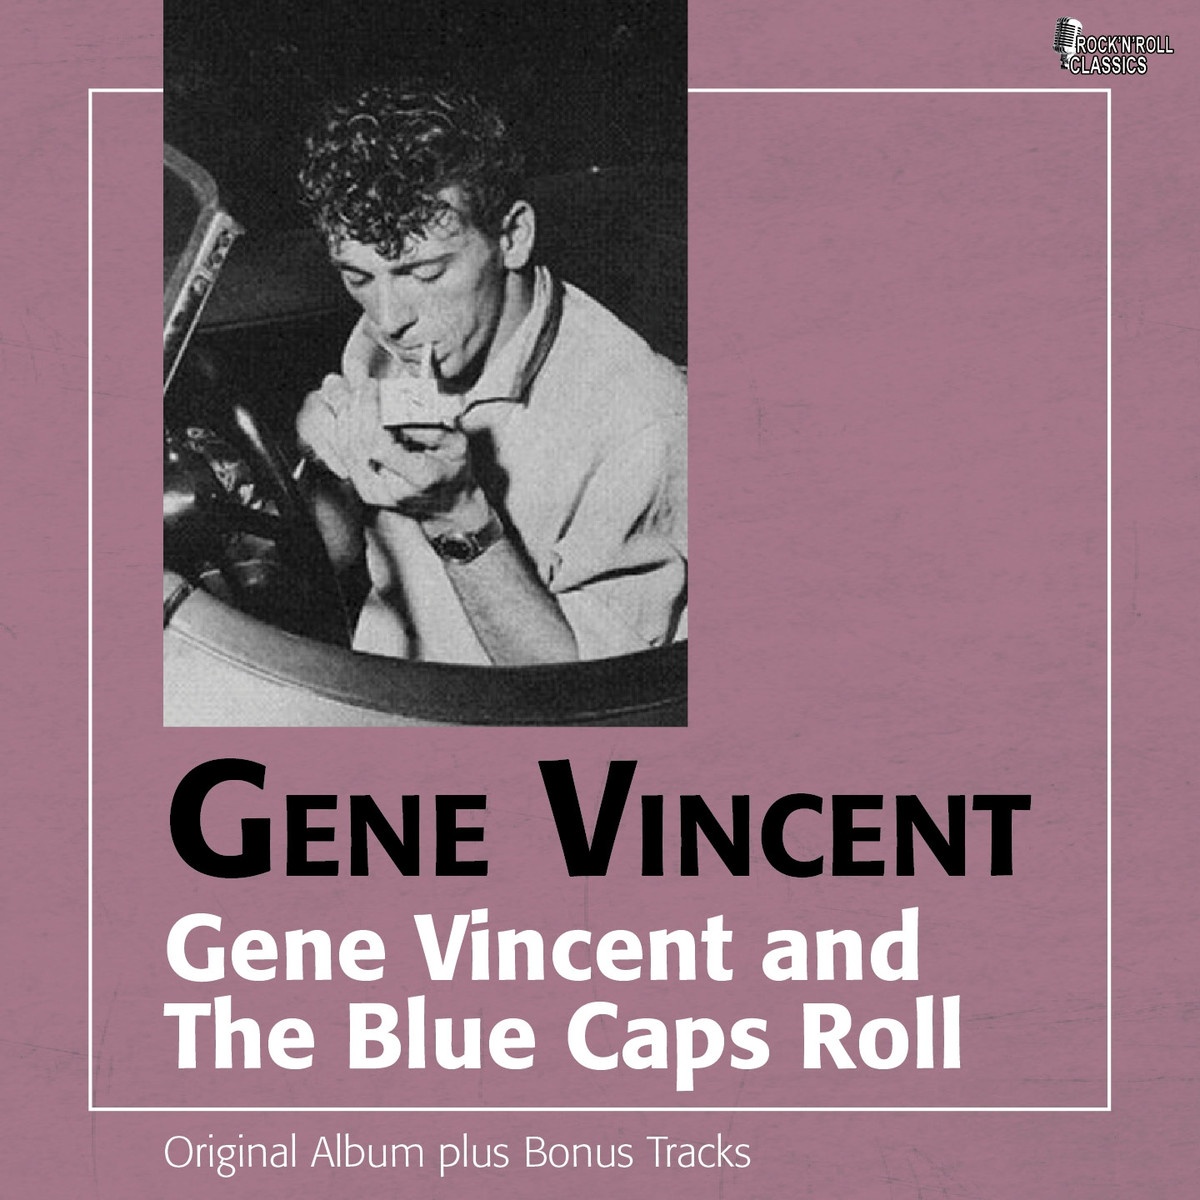 Gene Vincent Rocks and The Blue Caps Roll (Original Album Plus Bonus Tracks)